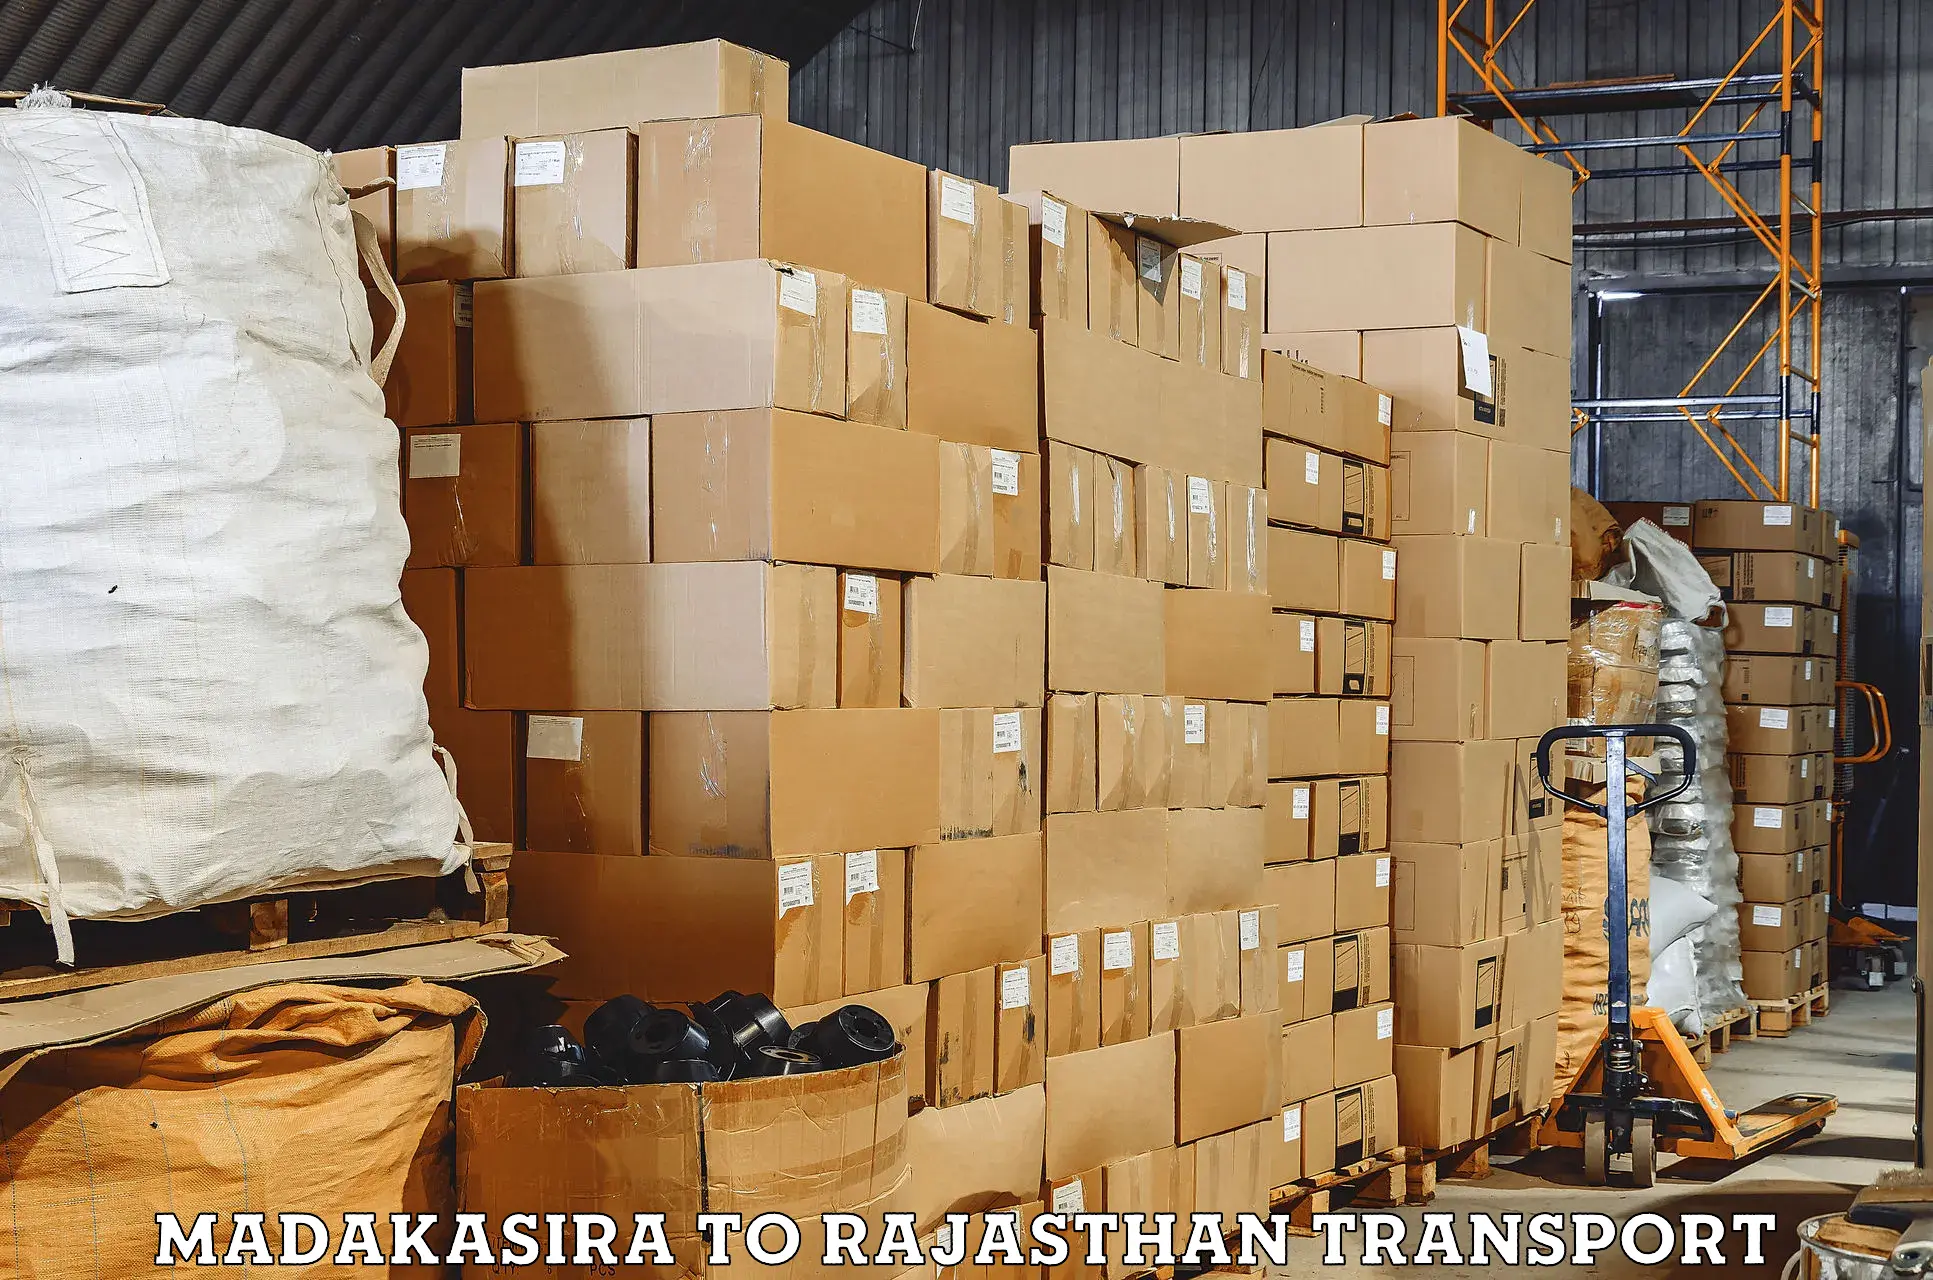 Truck transport companies in India Madakasira to Udaipurwati